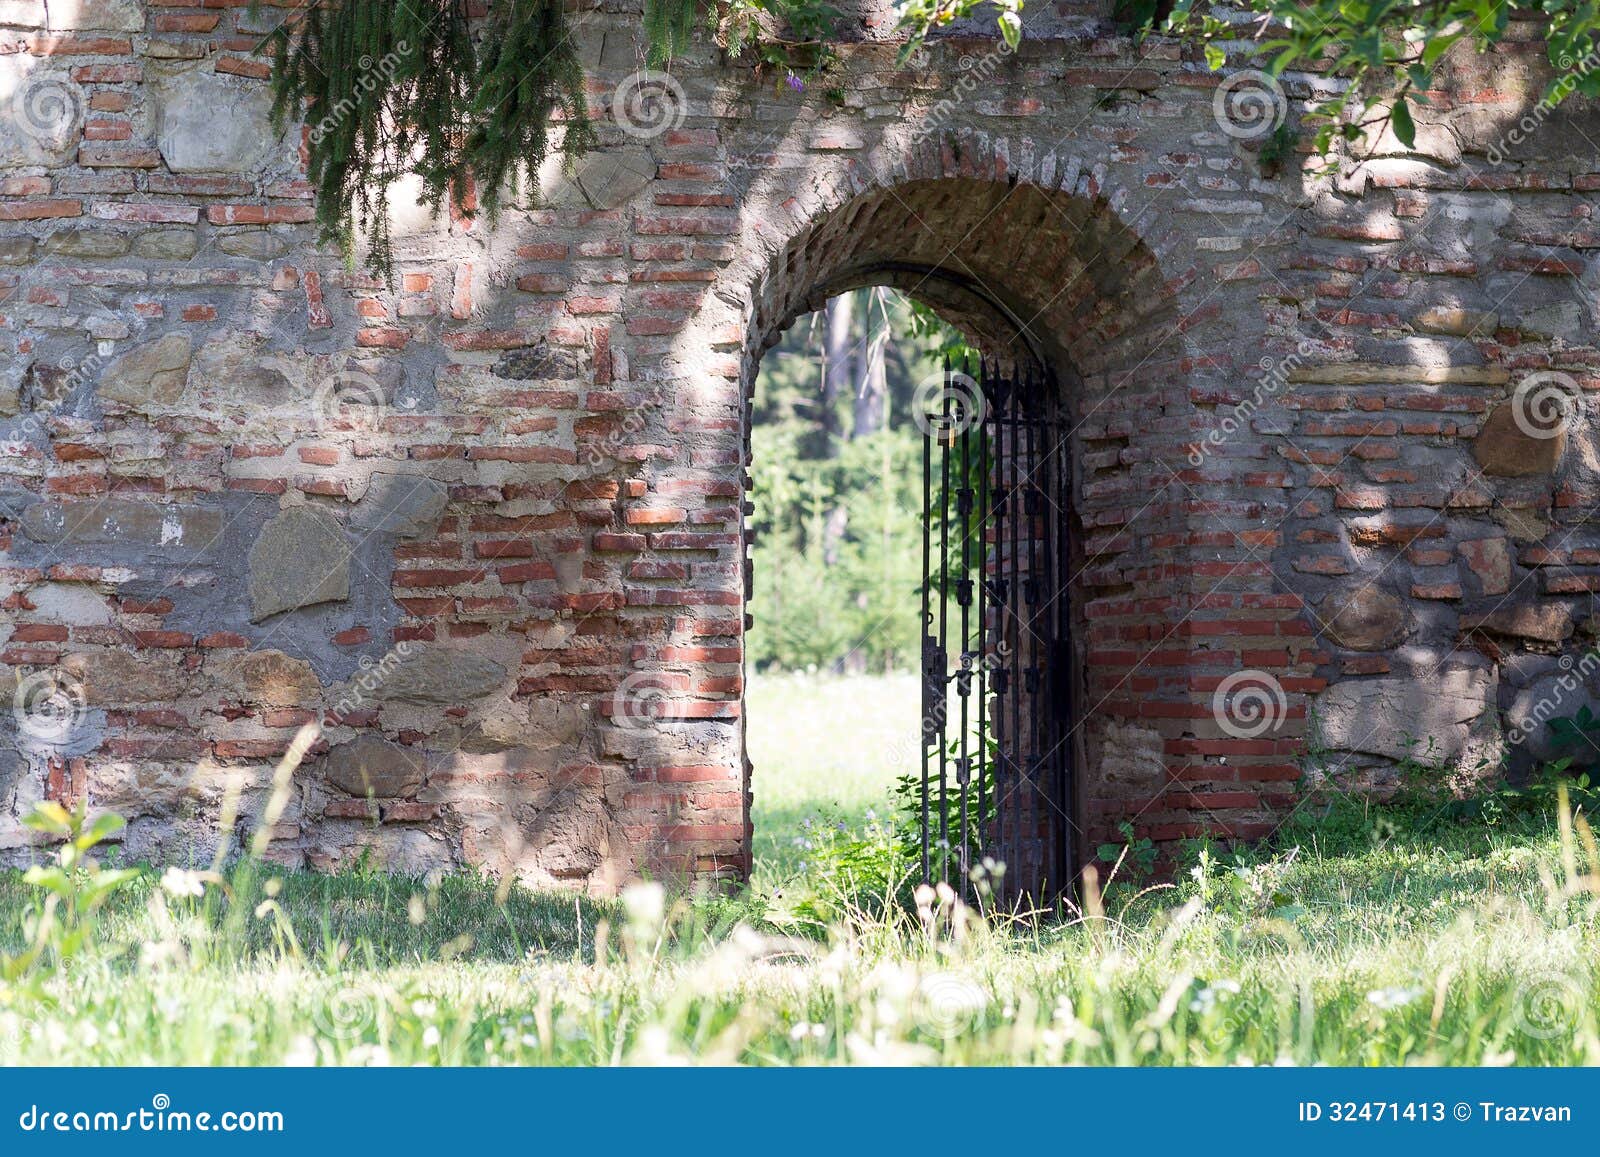 Medieval Monastery Garden Gate Stock Photos - Image: 32471413